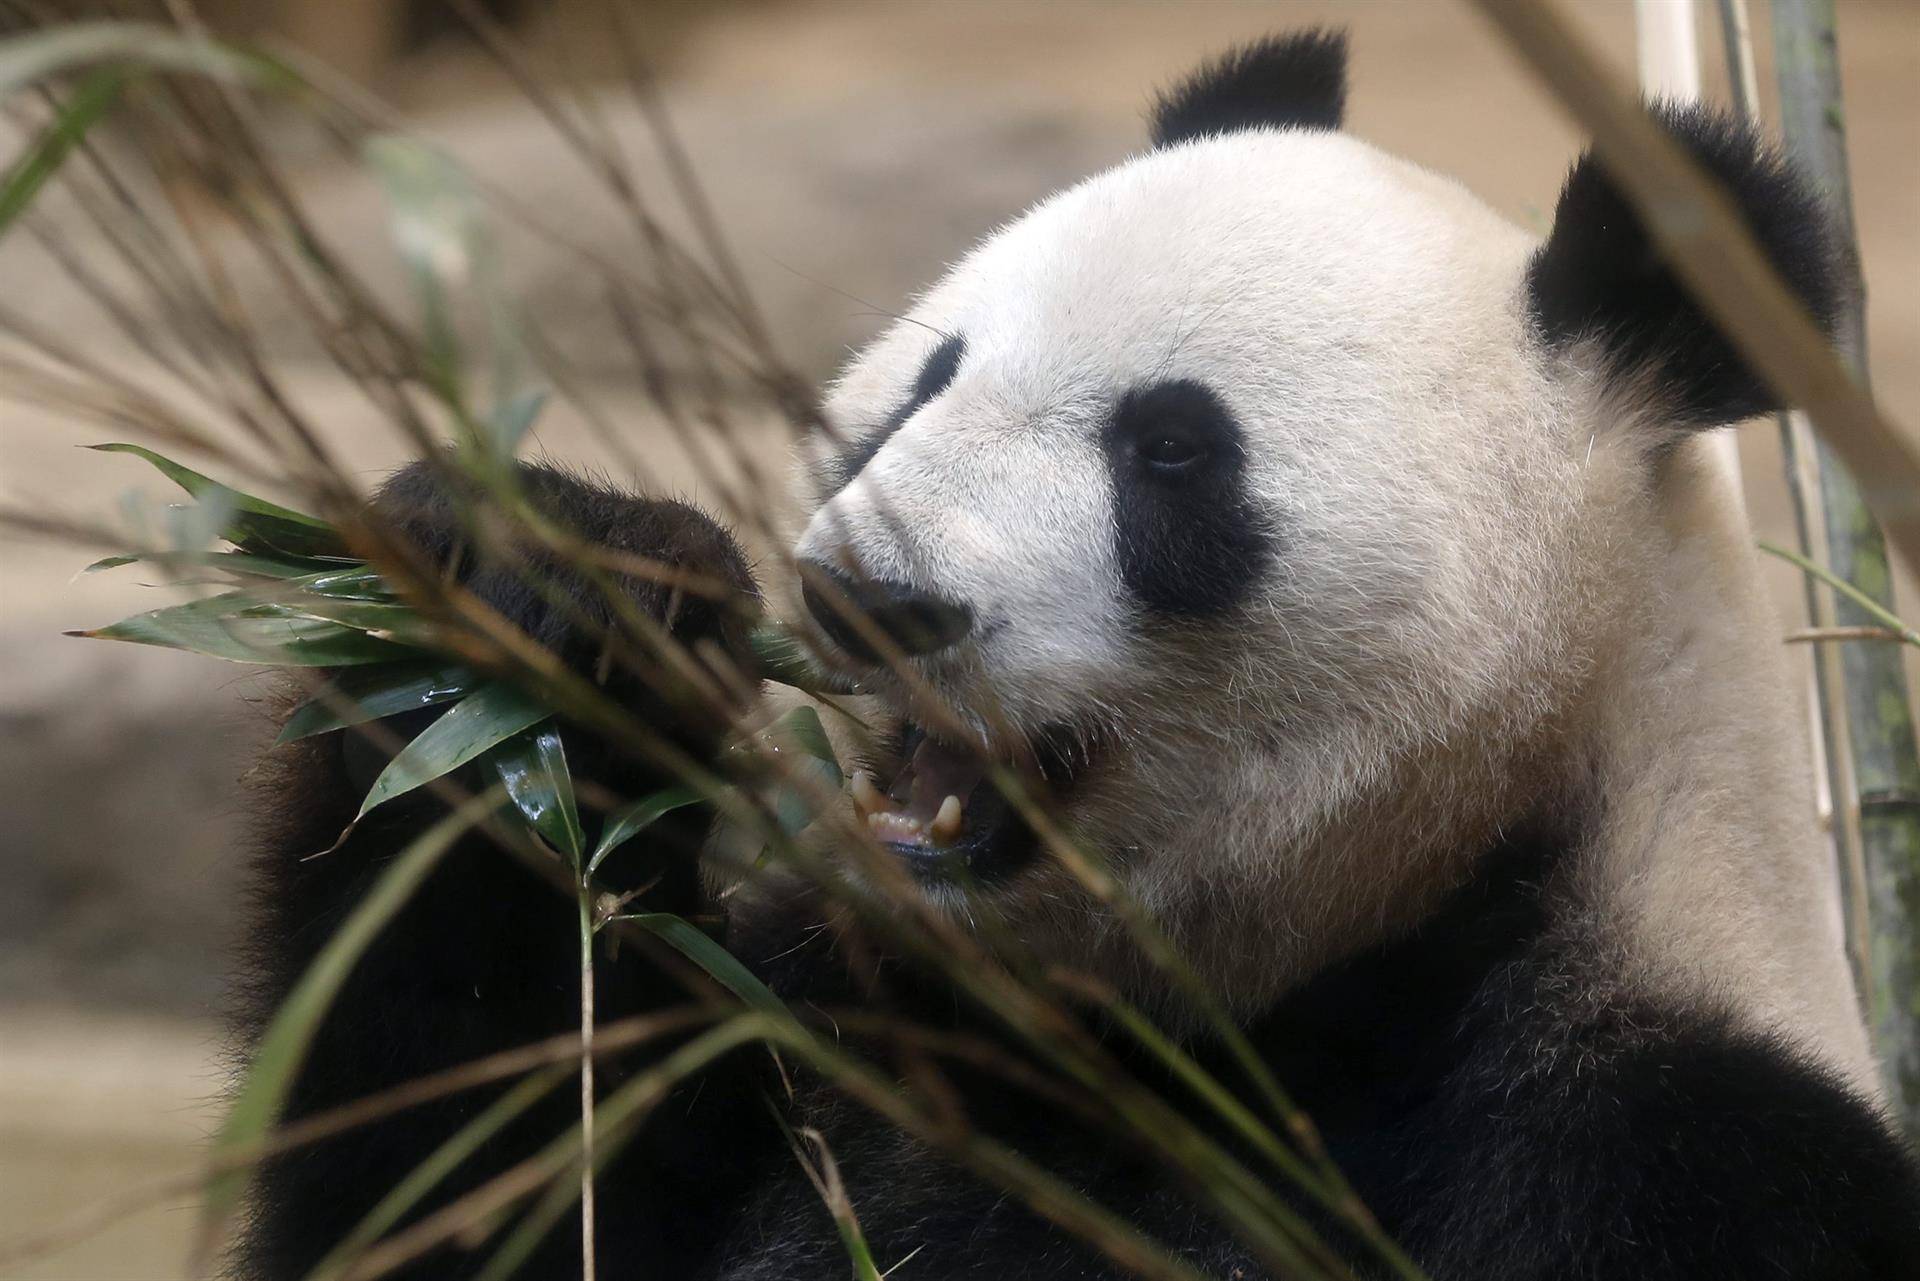 Los pandas evolucionaron para comer bambú hace unos seis millones de años